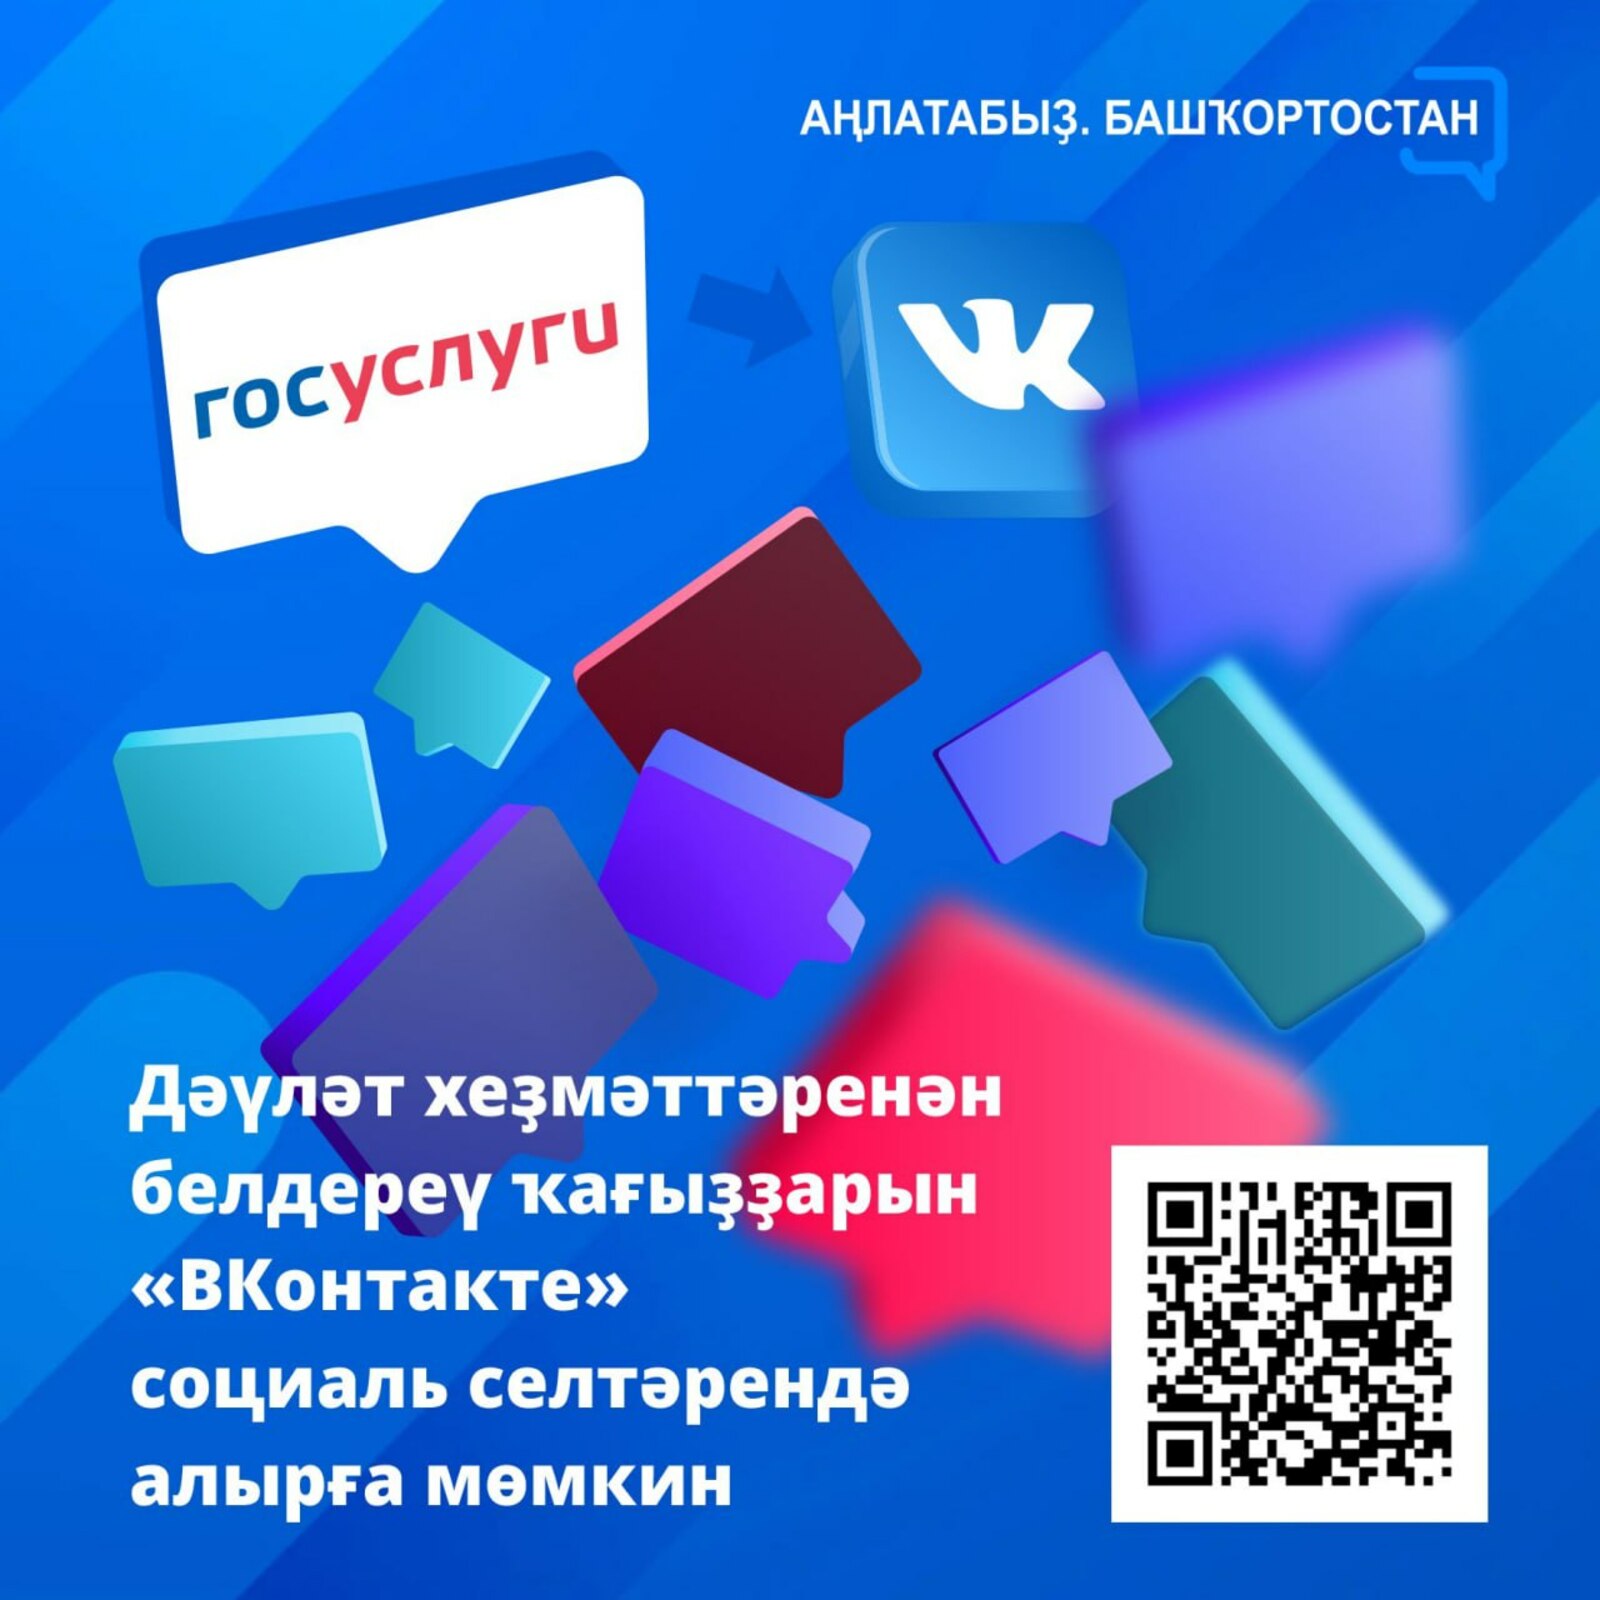 ЮХХДИ штрафтарын түләү мөмкинлеге хәҙер "ВКонтакте" селтәрендә лә буласаҡ